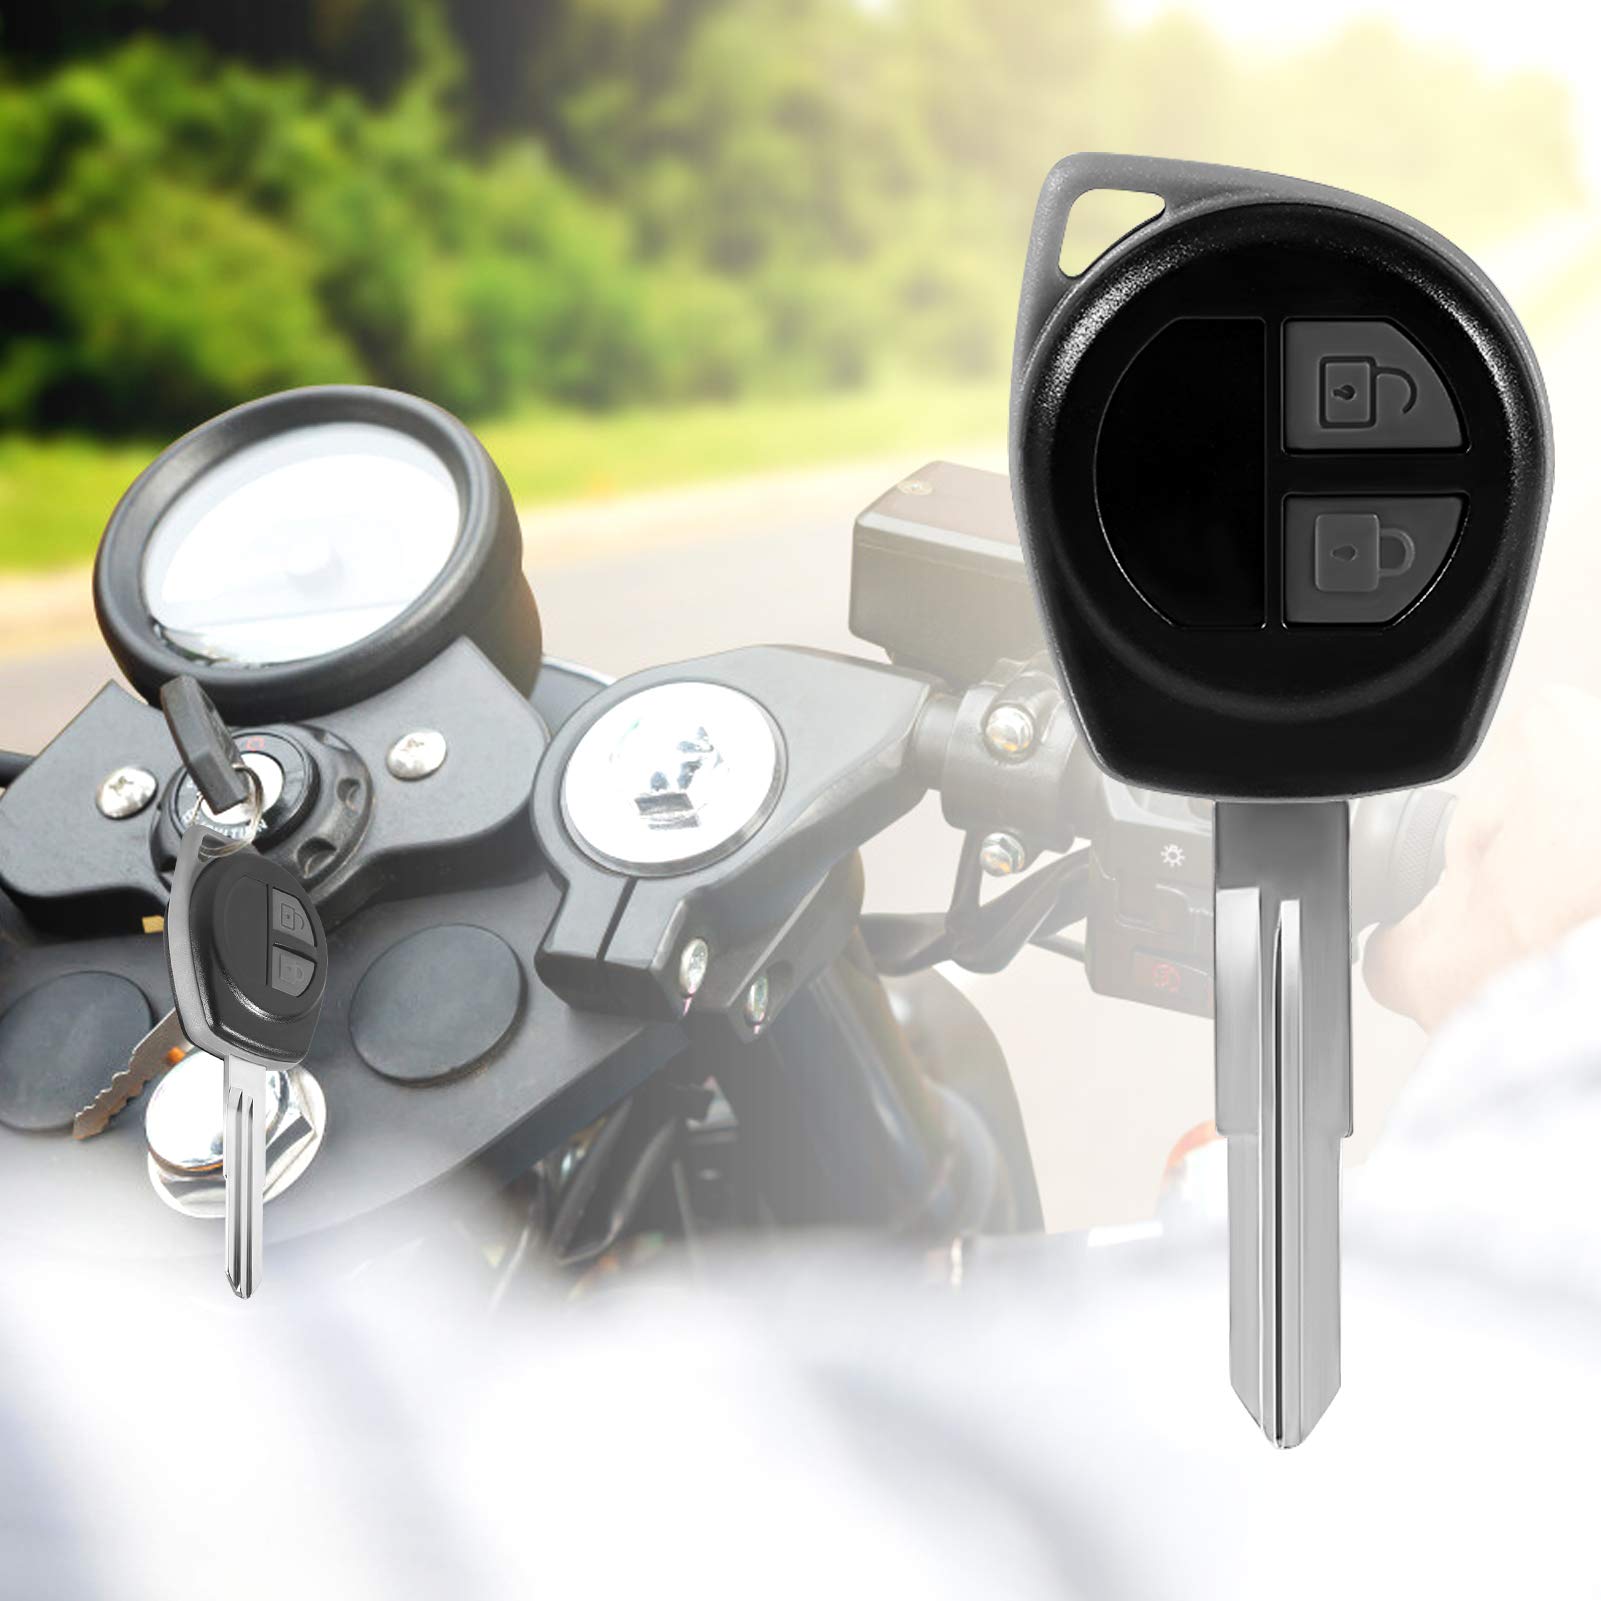 Schlüsselgehäuse Suzuki, Swift Schlüssel für Suzuki, Schlüssel Gehäuse Fernbedienung, 2 Tasten Rohling Autoschlüssel, Autoschlüssel Fall Ersatz Kompatibel für Suzuki Vitara Swift Ignis Sx4 Liana Alto von Yosoo Health Gear